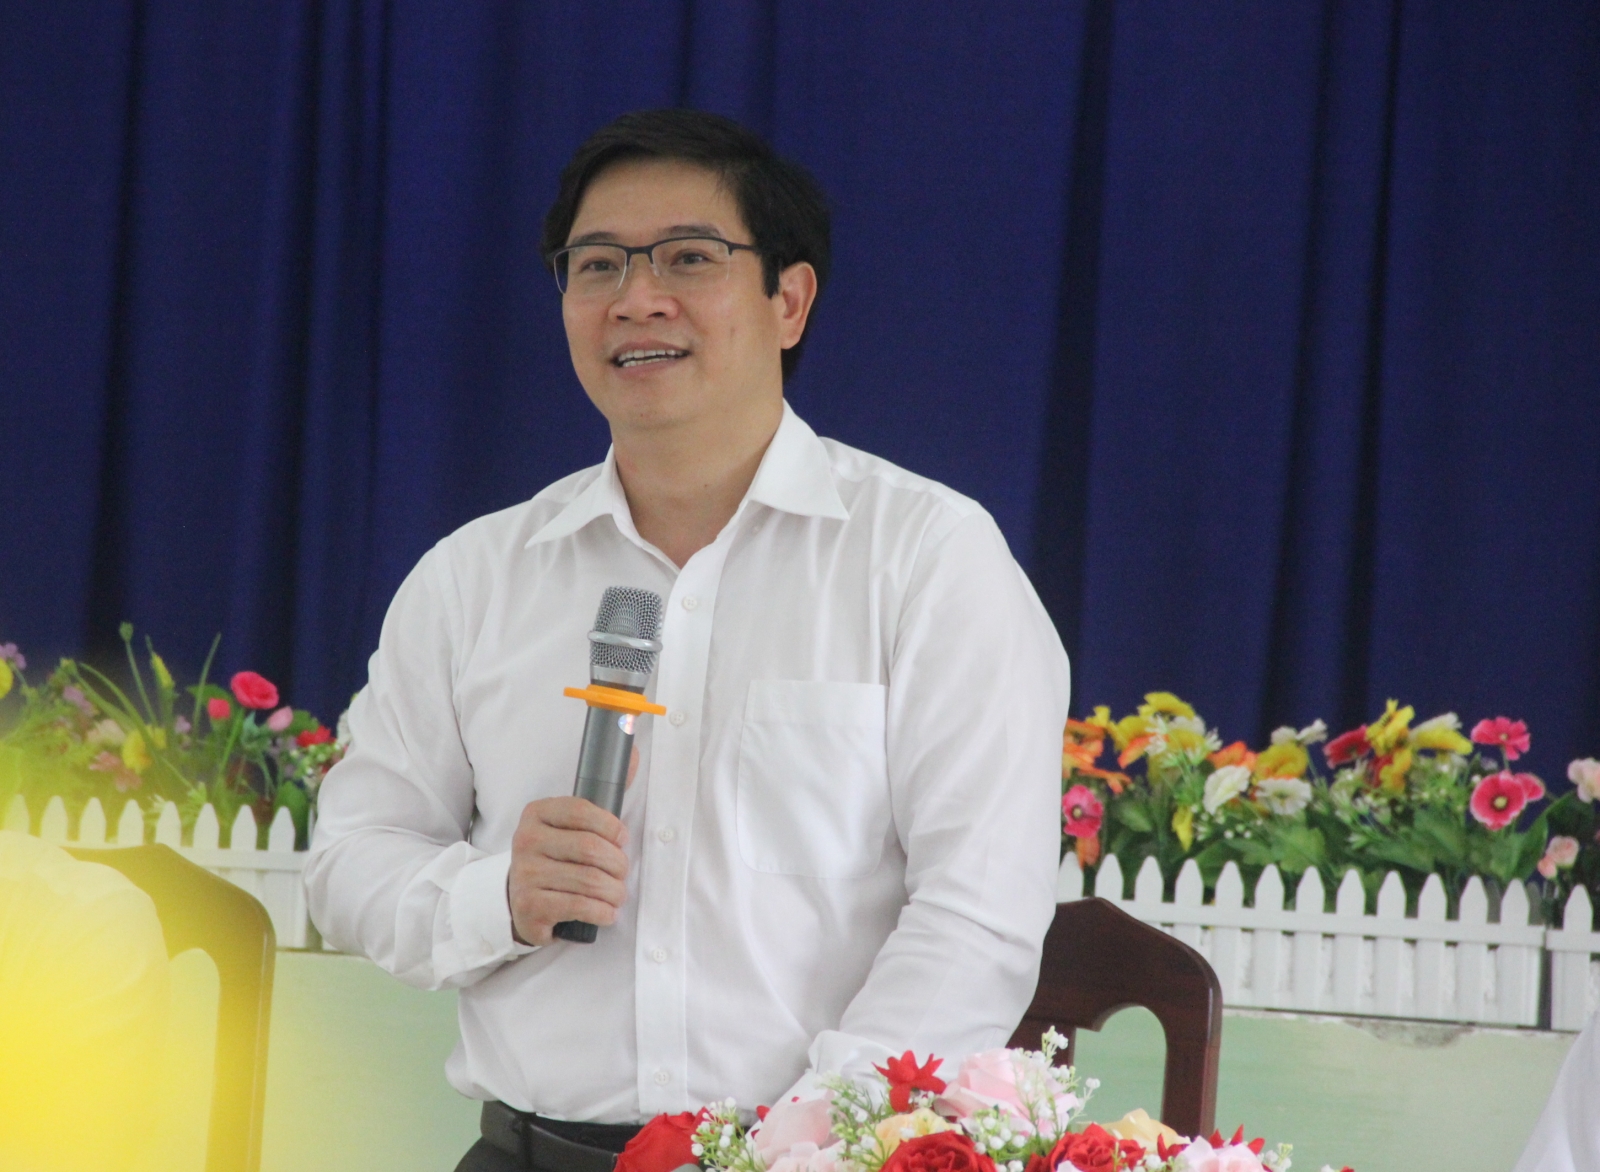 Thứ trưởng Nguyễn Hữu Độ khảo sát thực hiện chương trình GDPT 2018 tại TPHCM - Ảnh minh hoạ 6